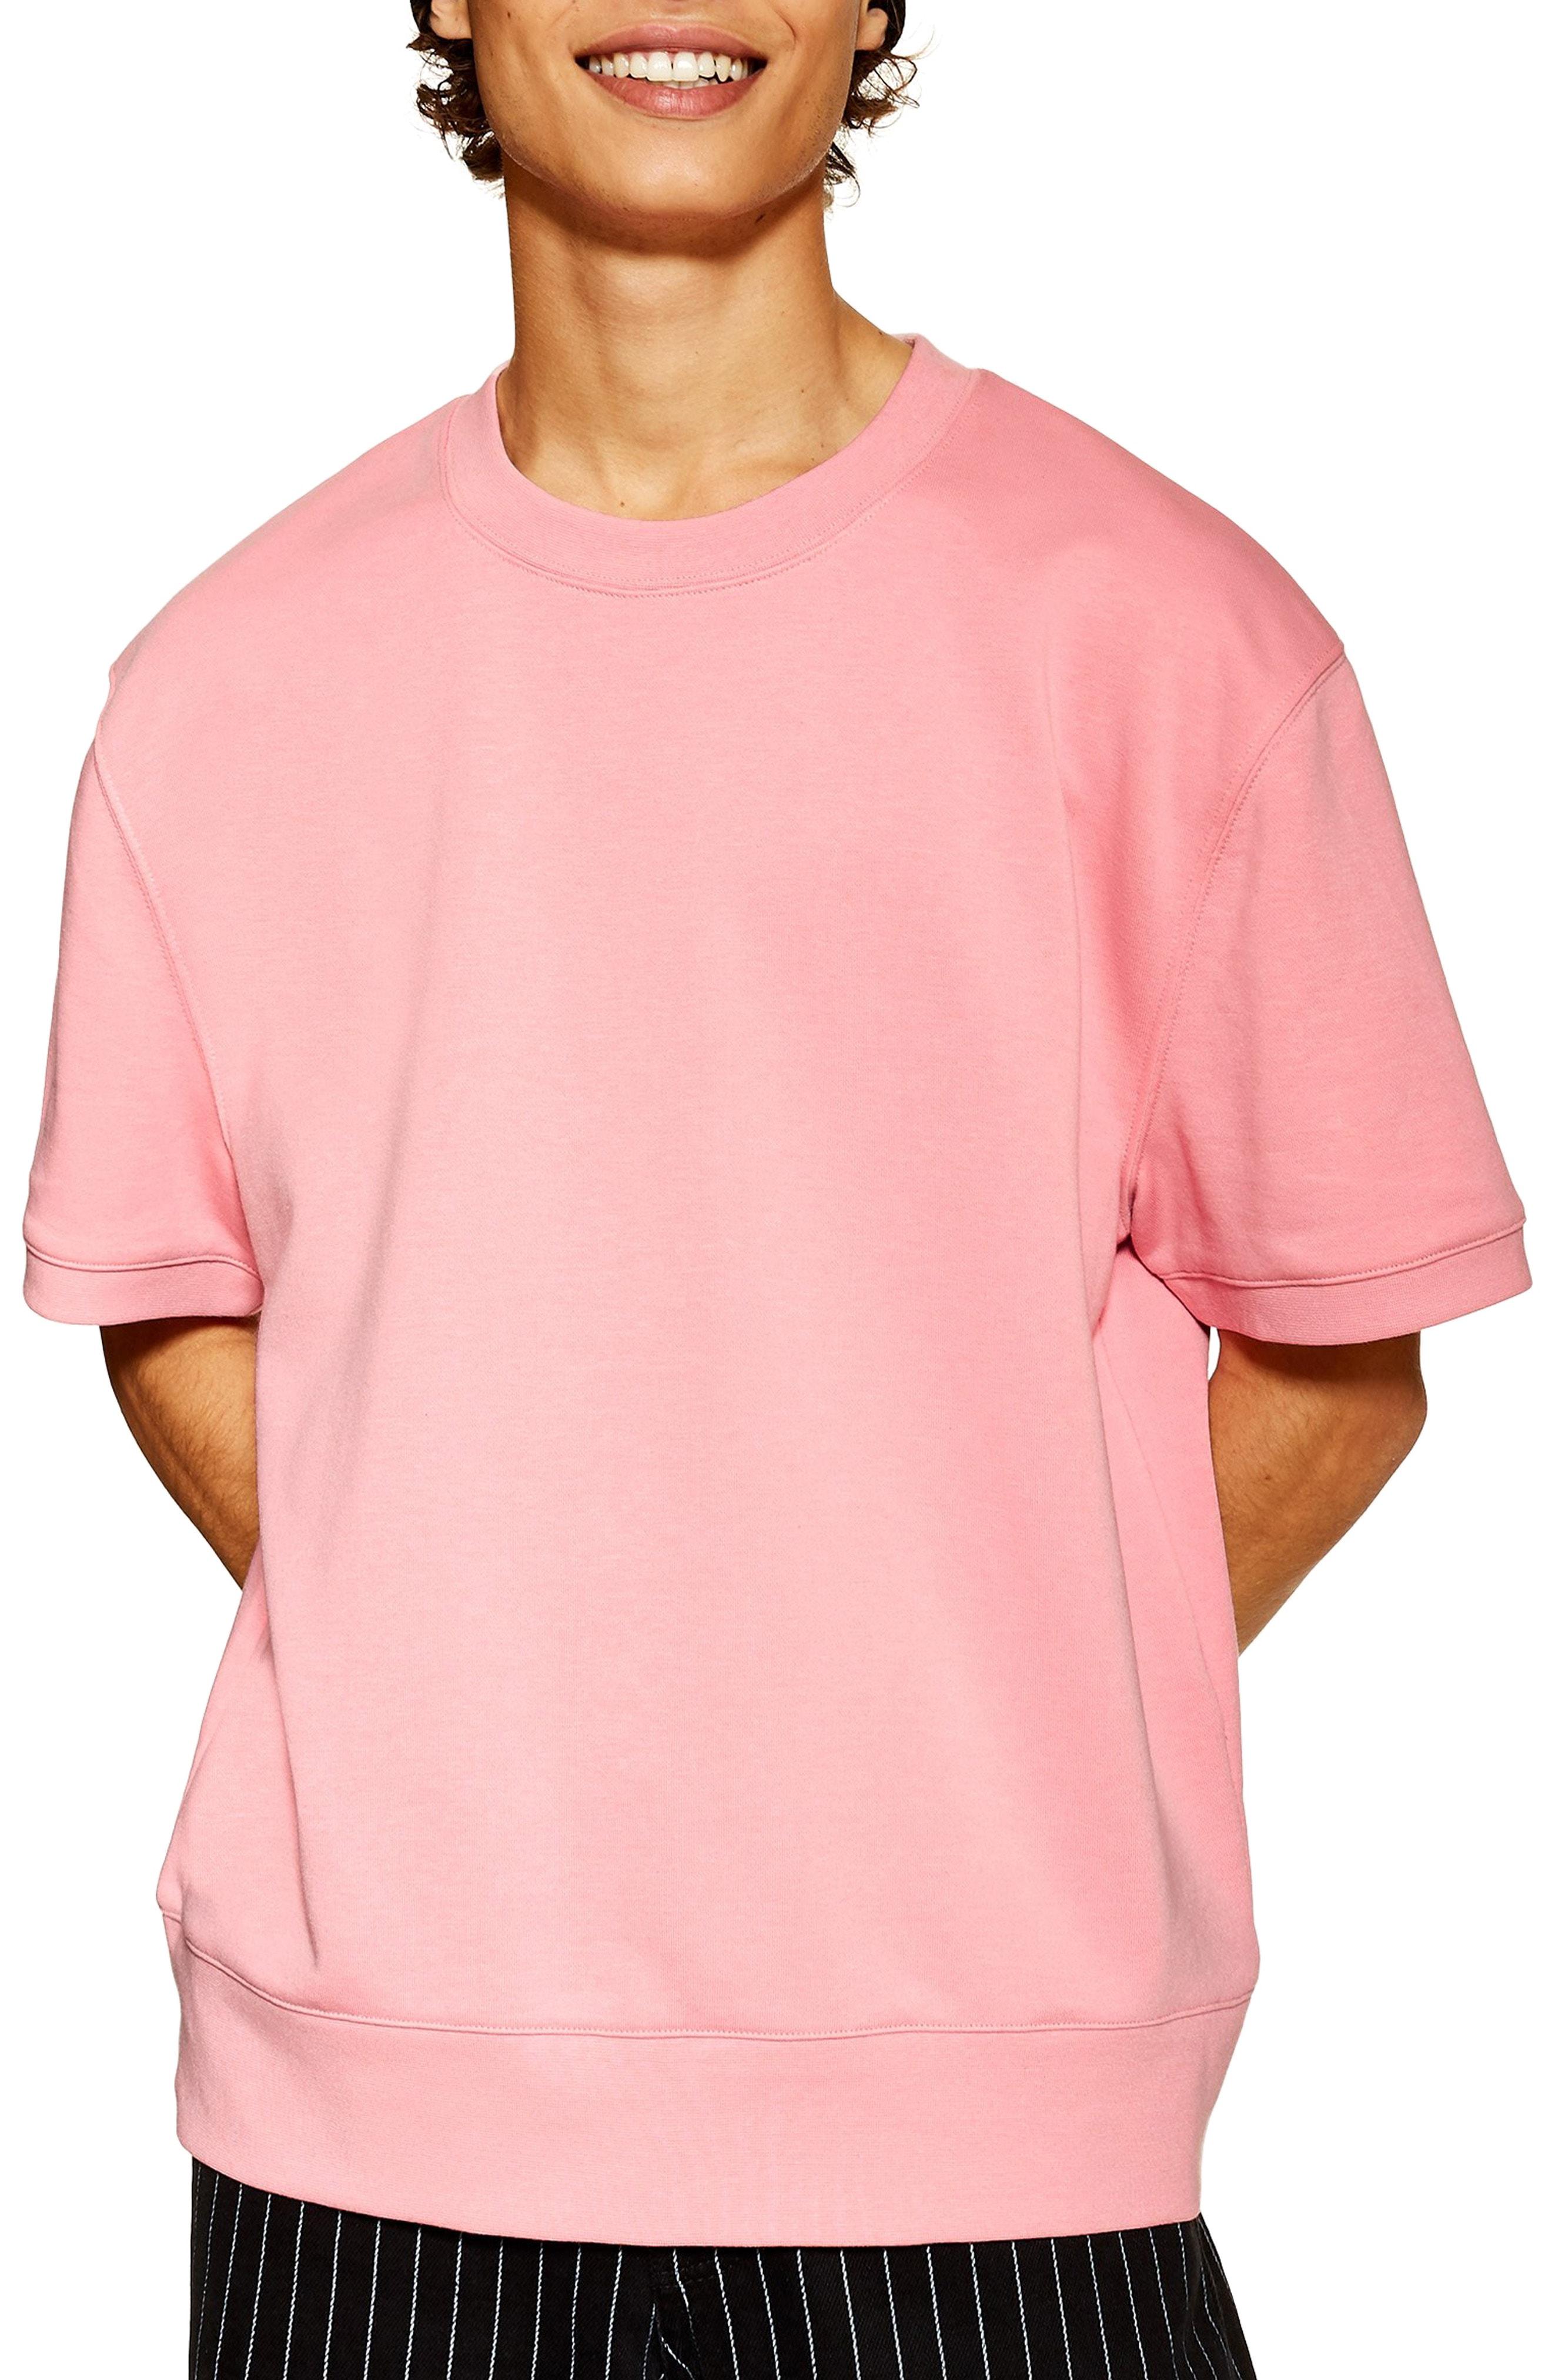 TOPMAN Short Sleeve Crewneck Sweatshirt in Pink for Men - Lyst